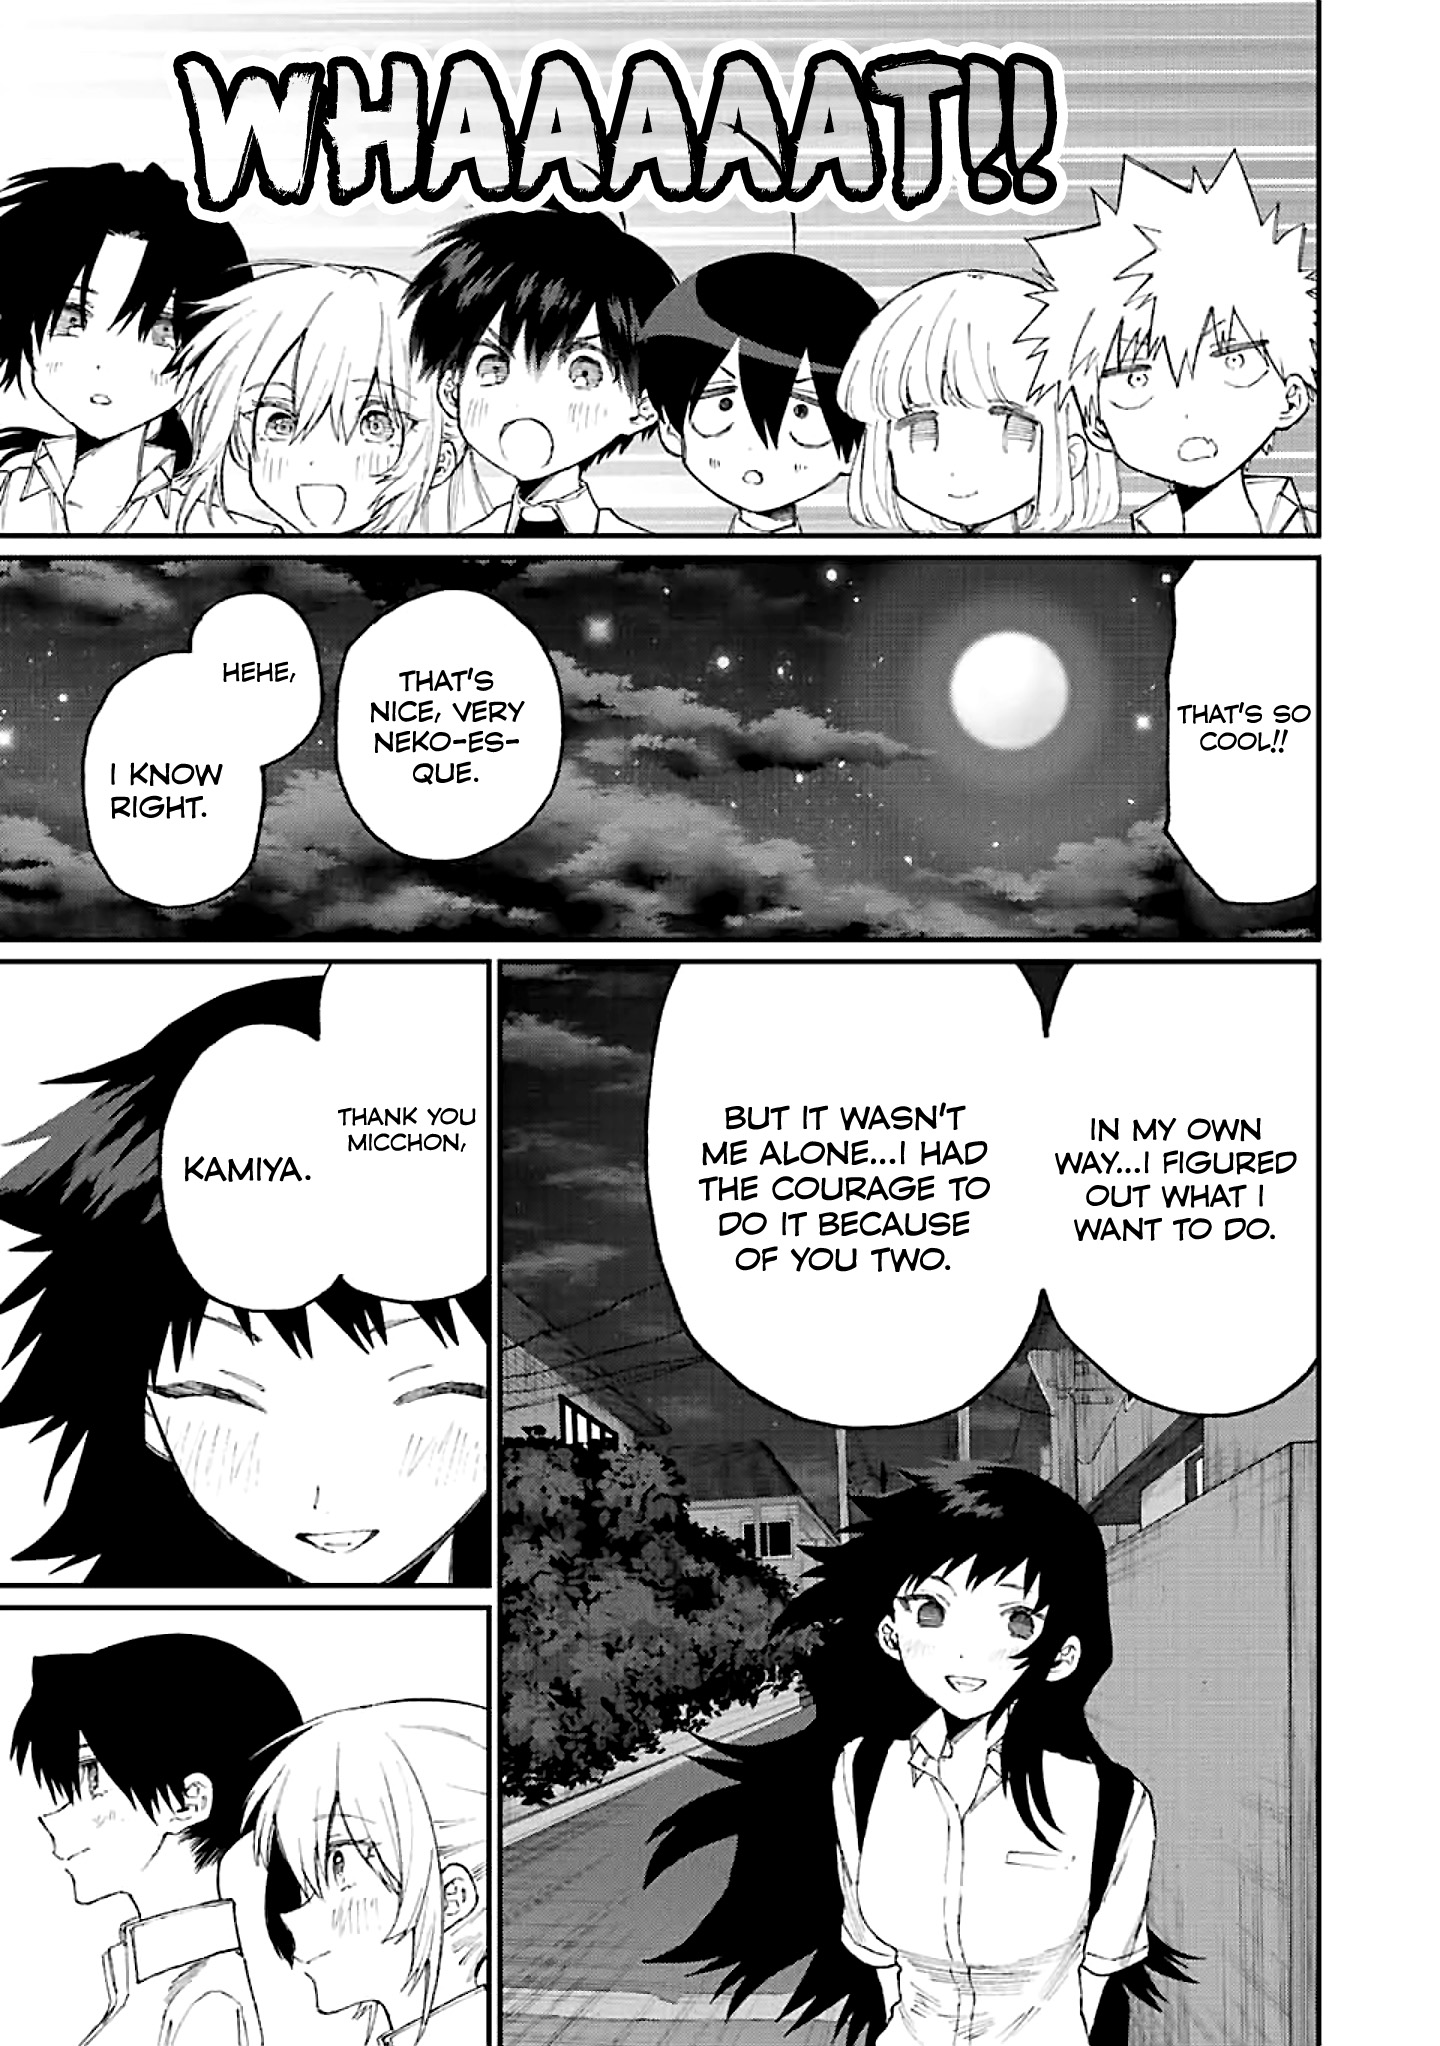 Shikimori's Not Just a Cutie Manga